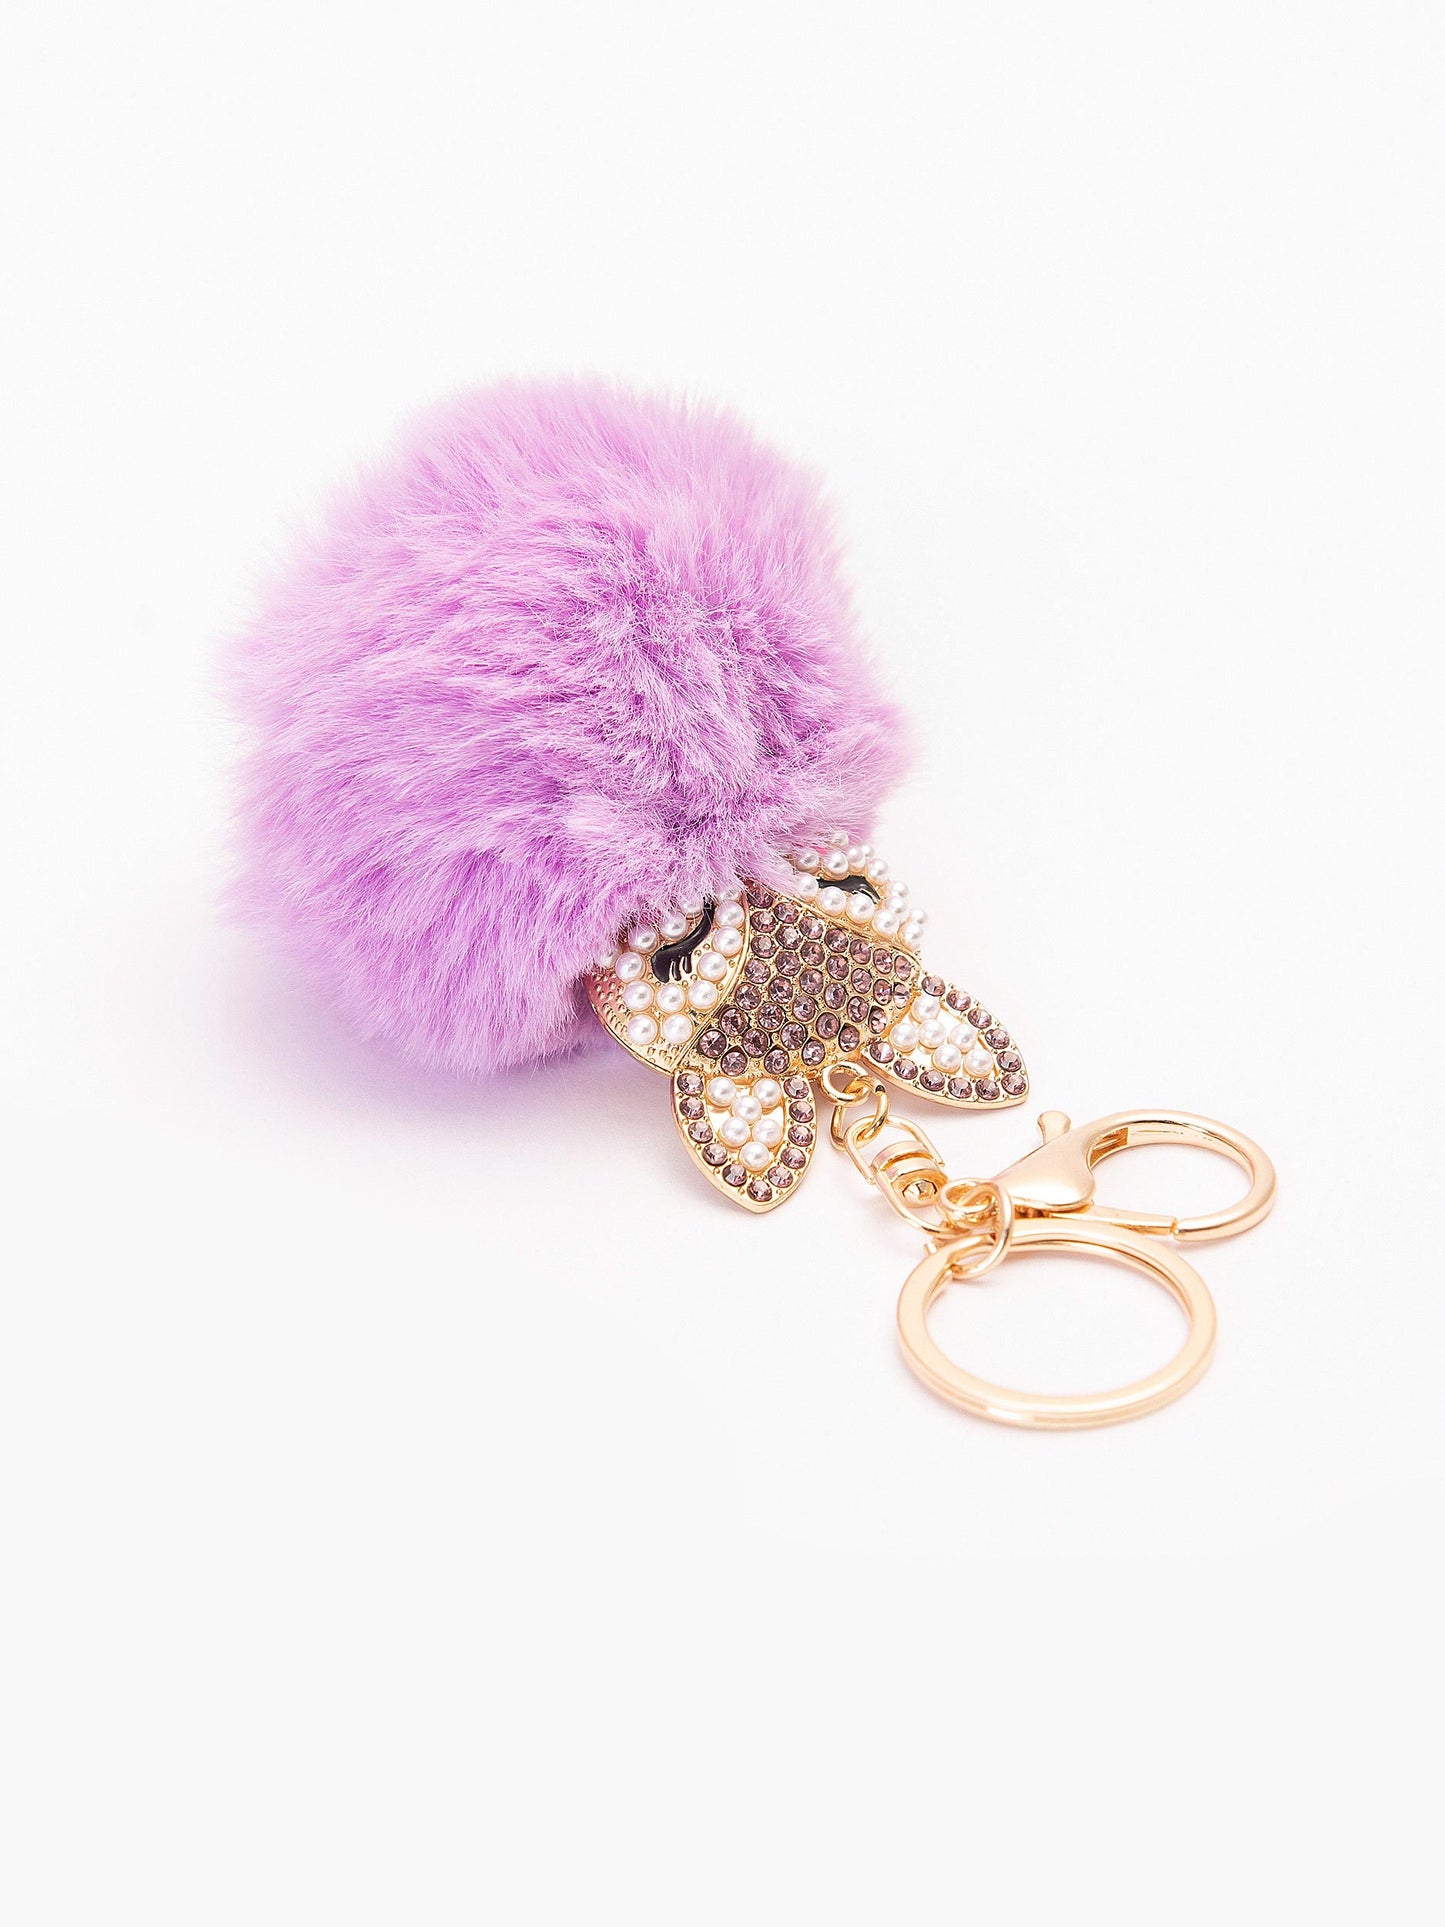 Bejeweled Bunny Keychain